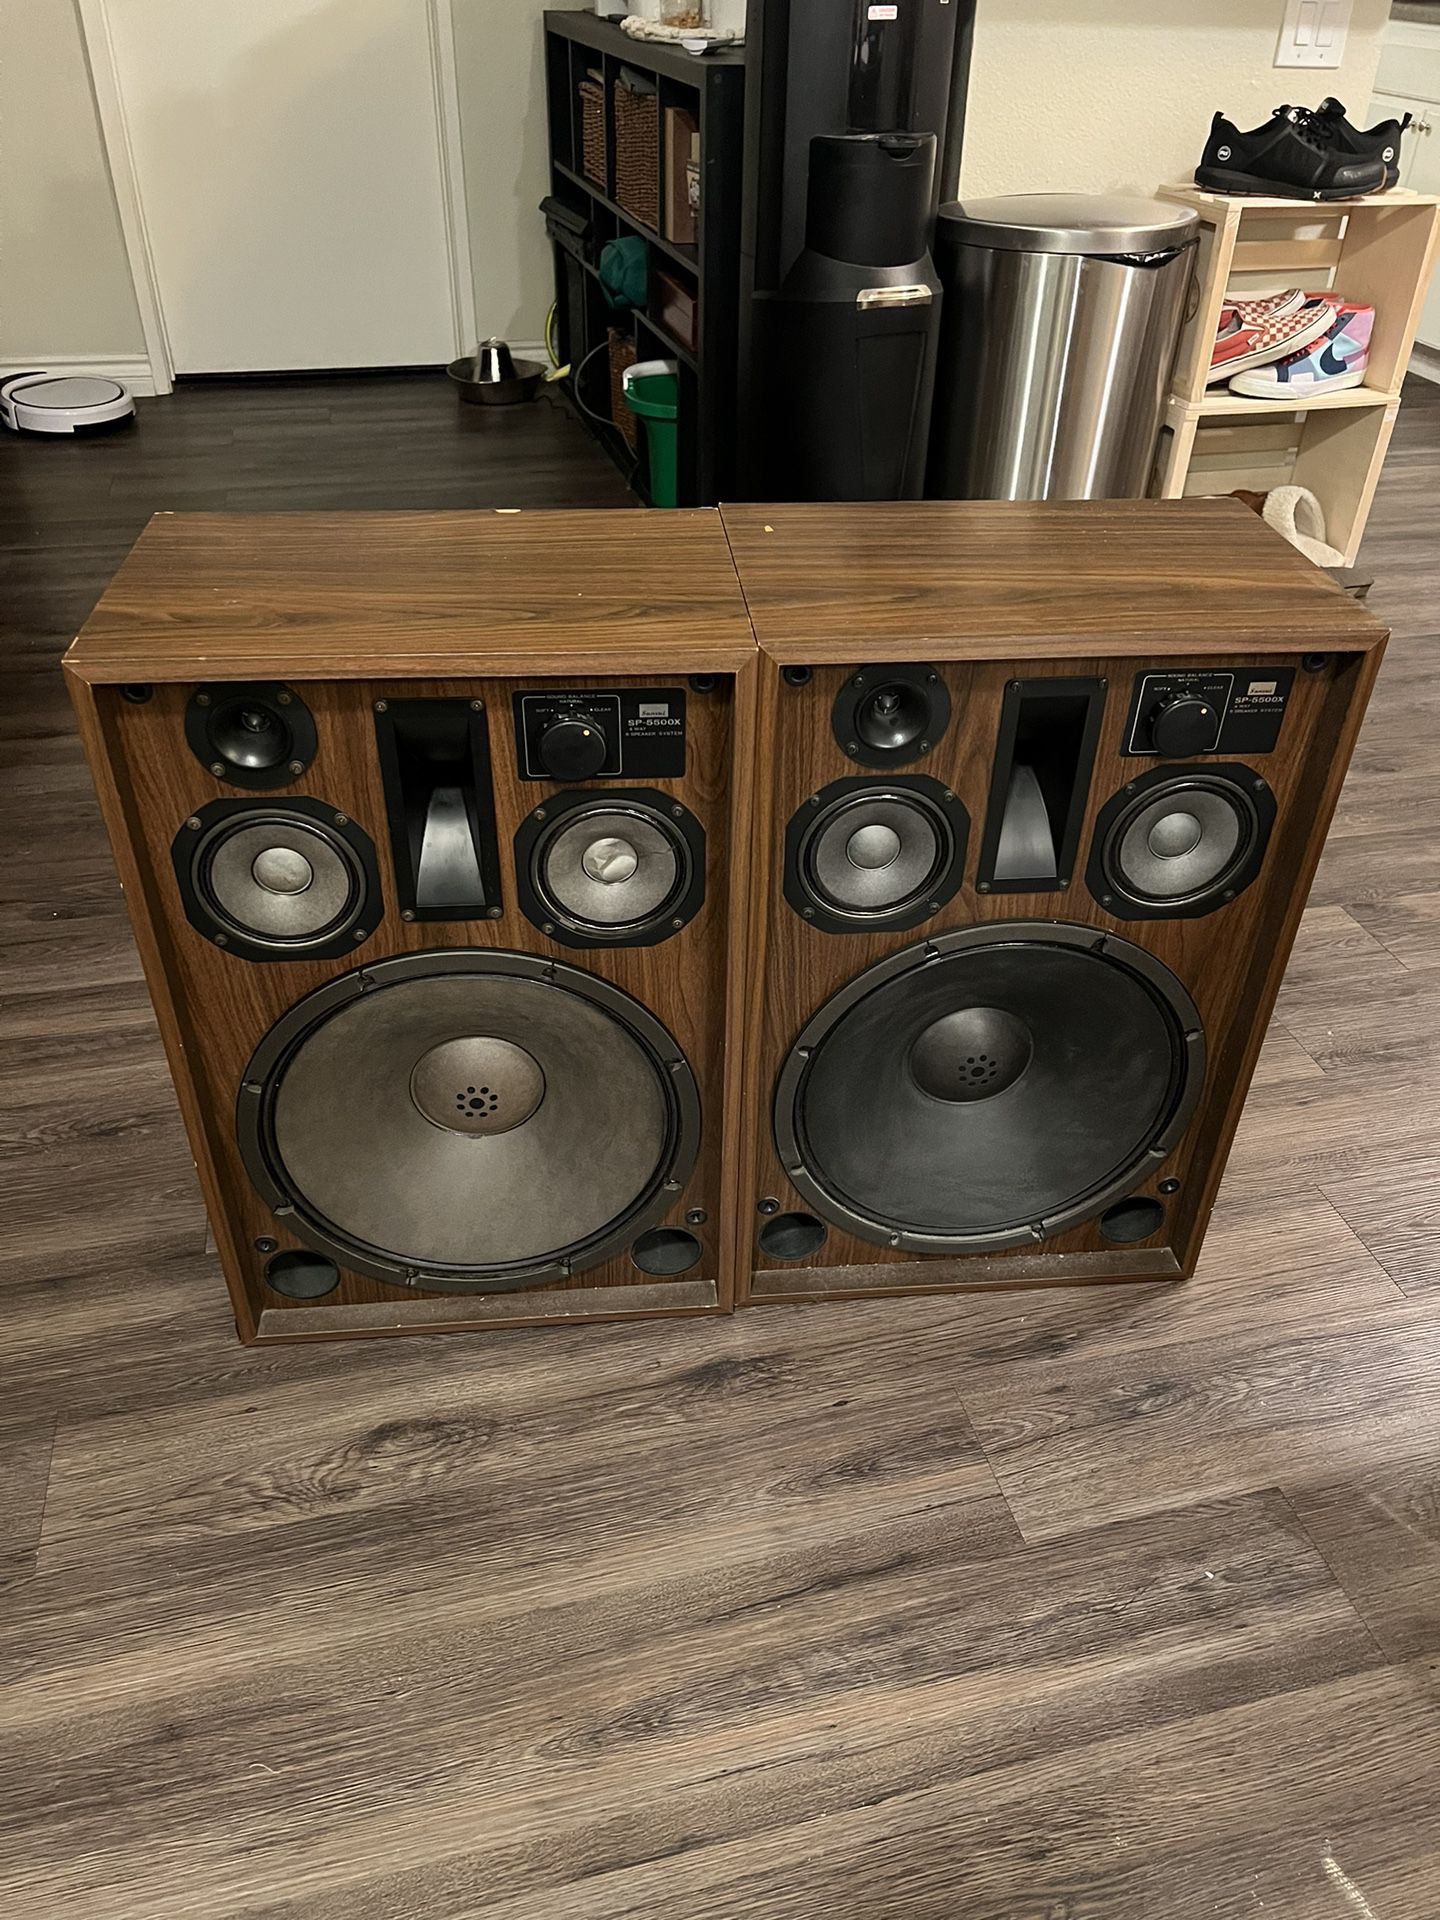 sansui sp-5500x speakers